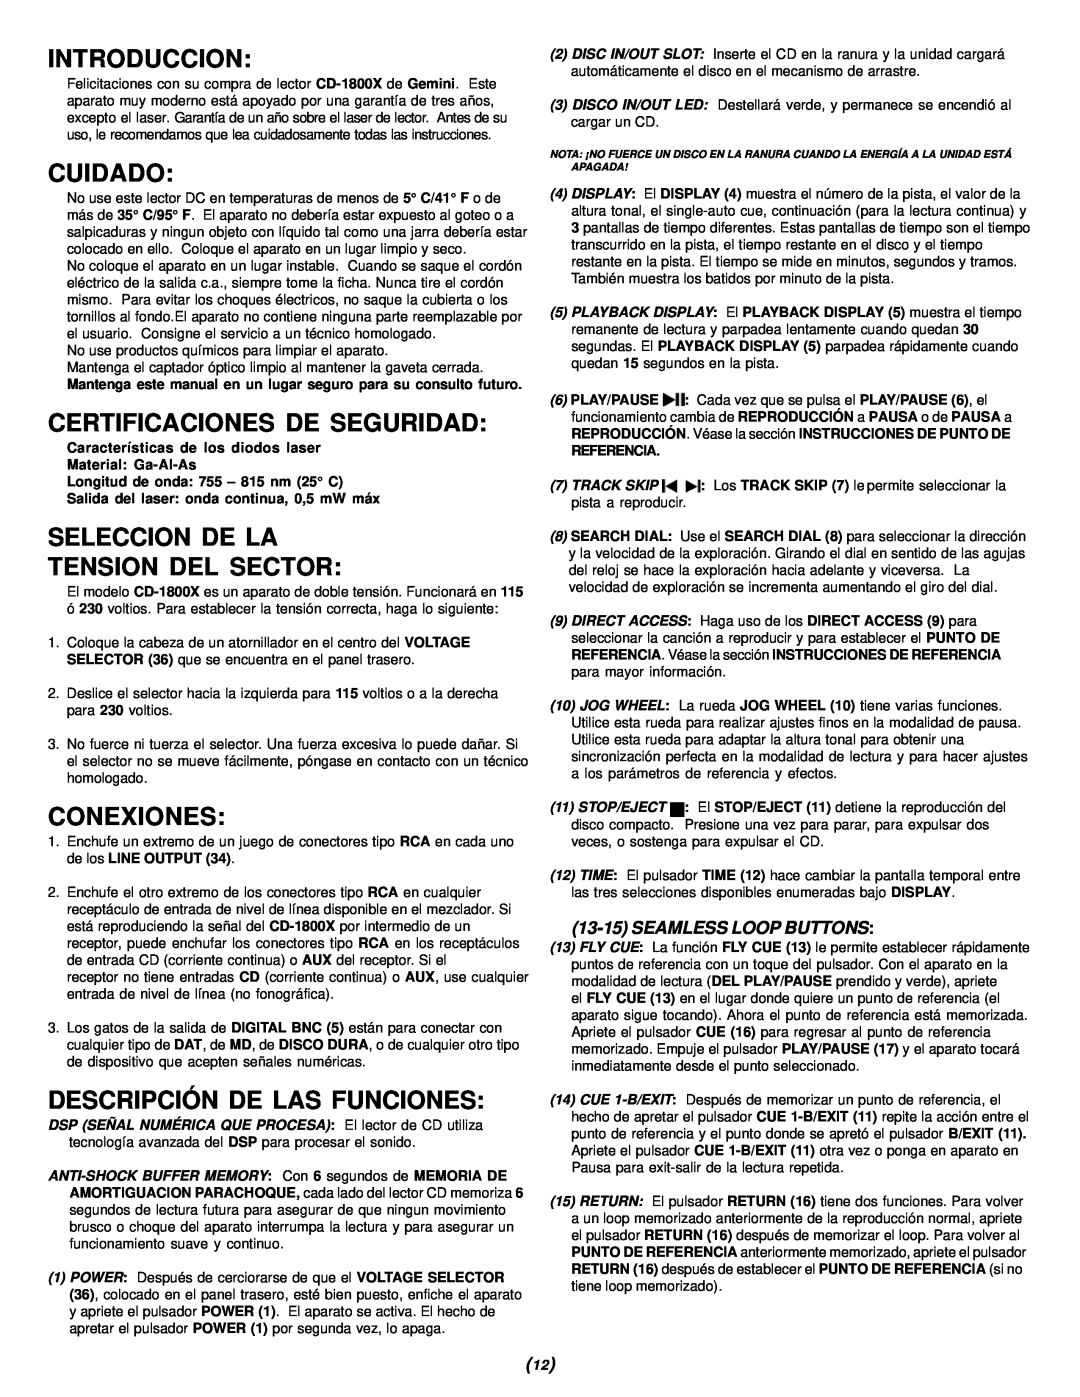 Gemini CD-1800X manual Introduccion, Cuidado, Certificaciones De Seguridad, Seleccion De La Tension Del Sector, Conexiones 